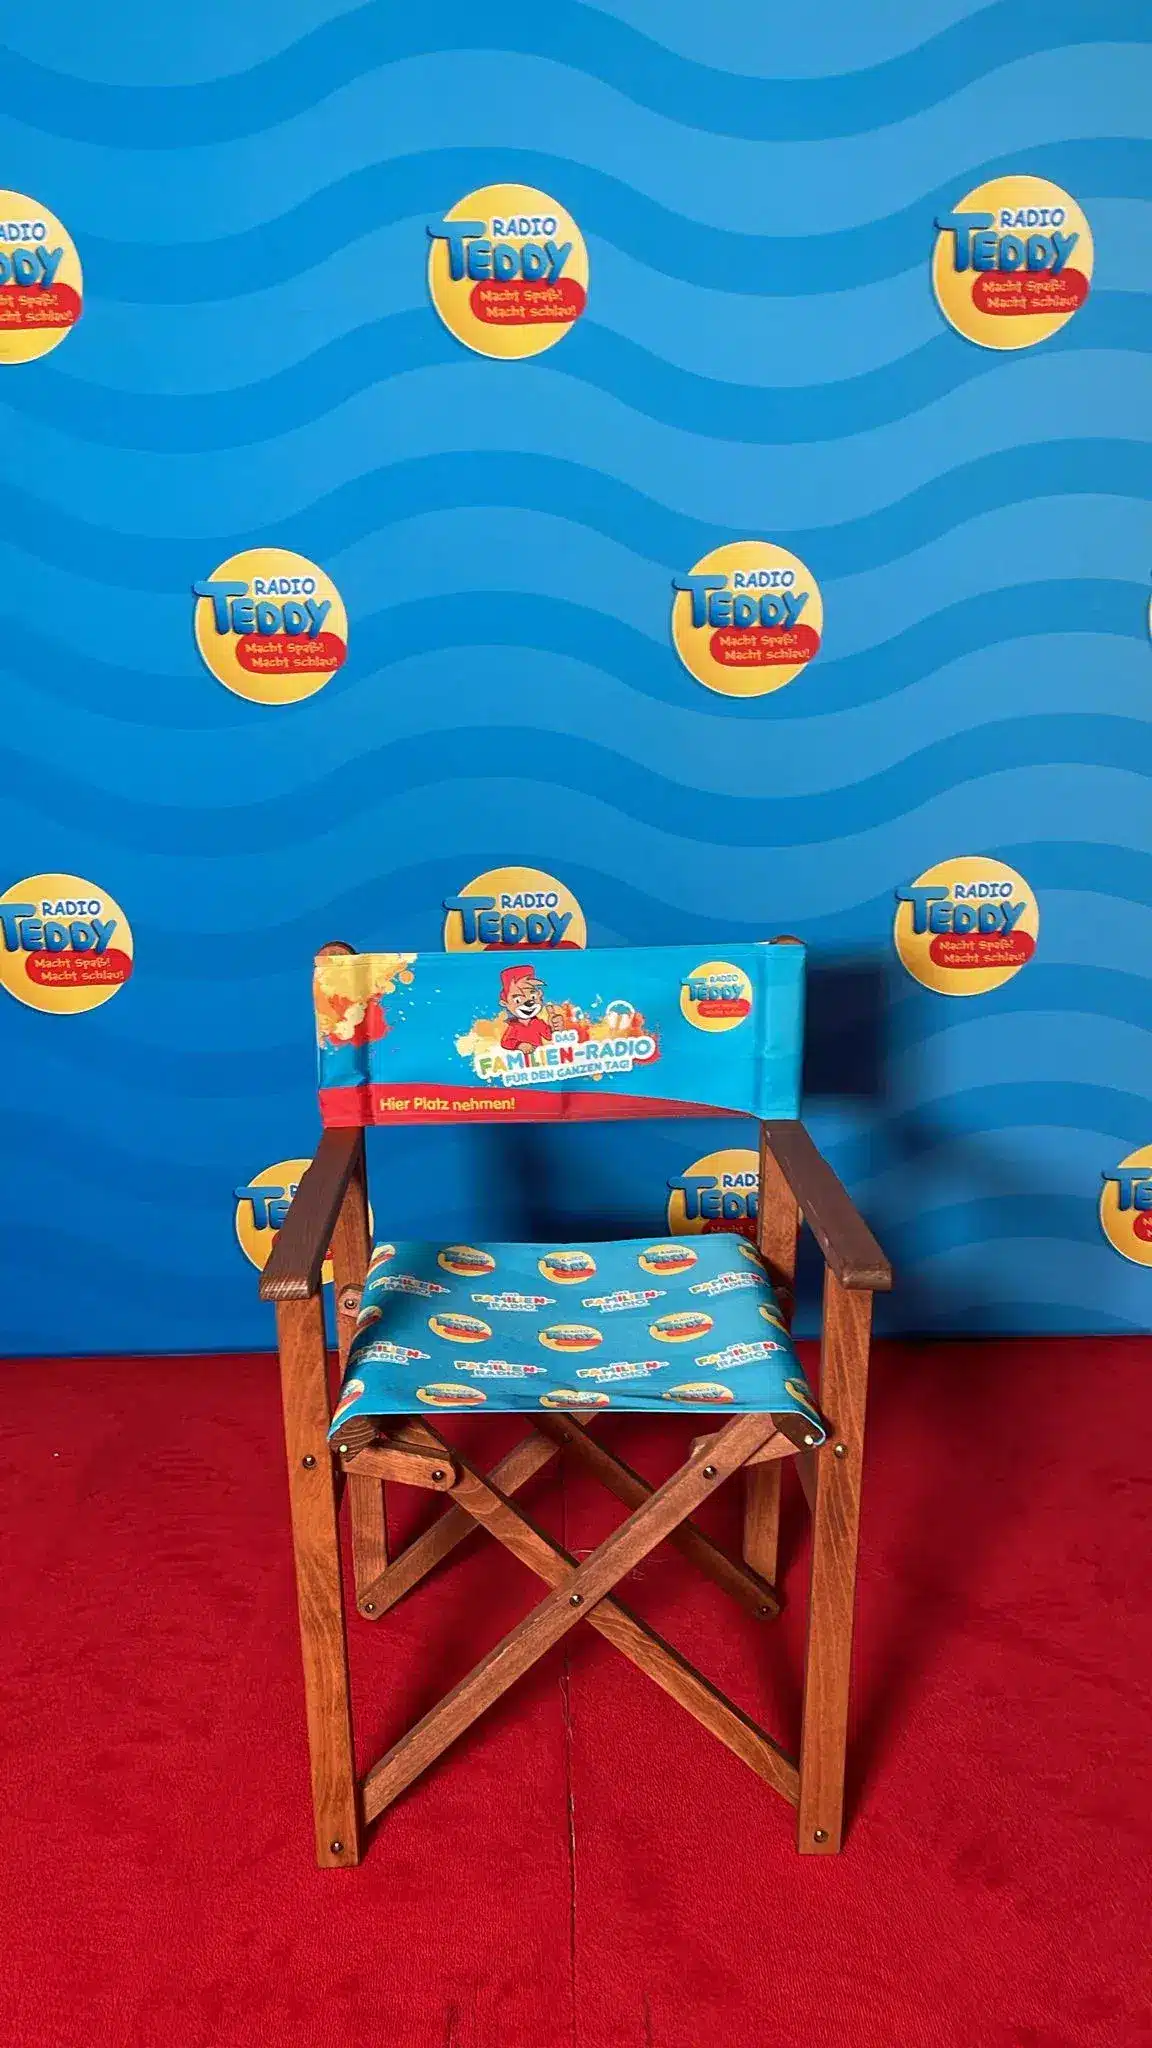 Der Klappstuhl steht vor einer Radio TEDDY-Fotowand